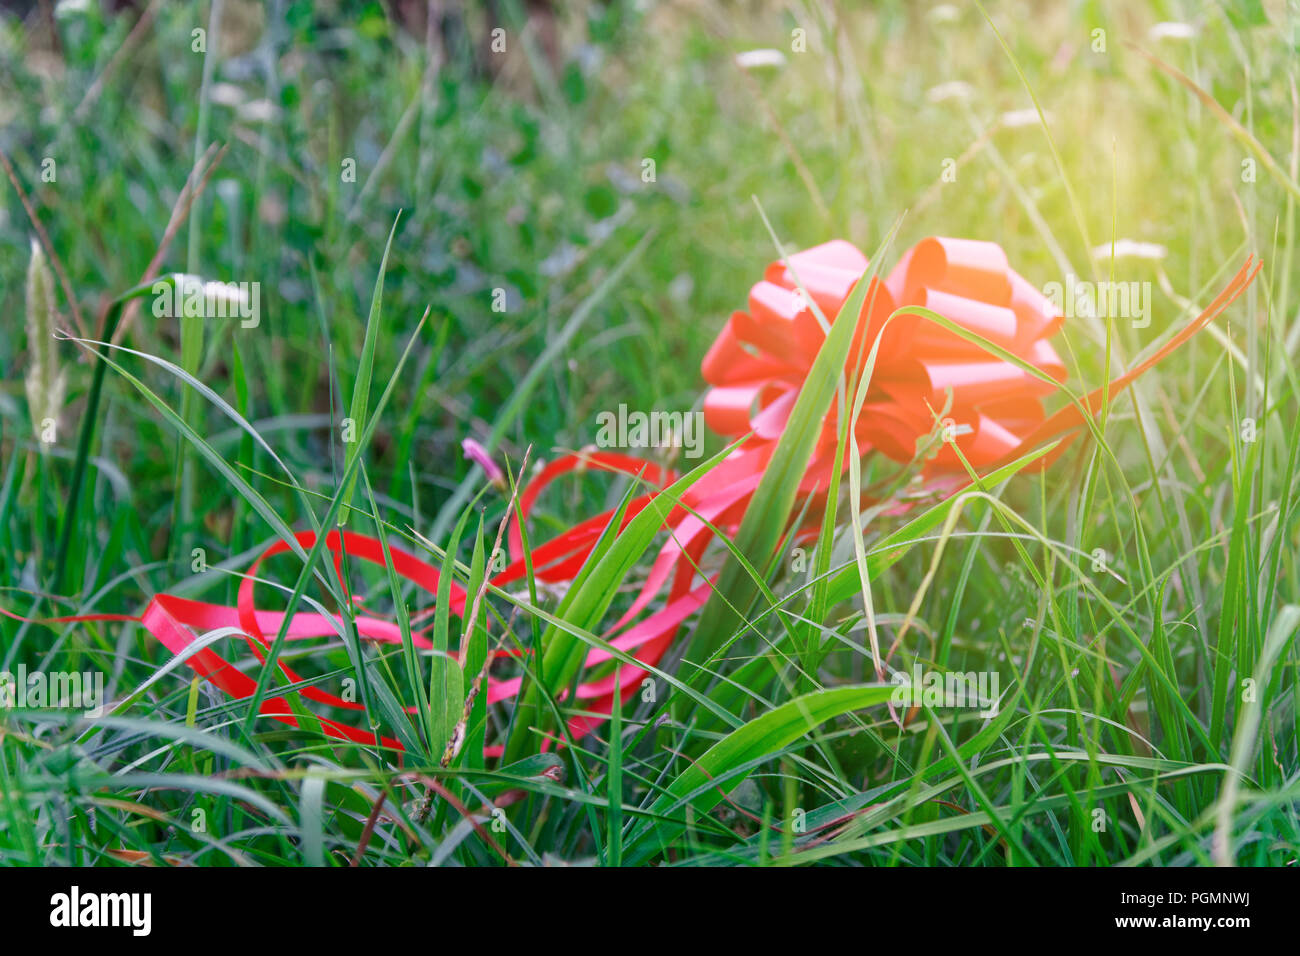 Red Bug im Sonnenstrahl Licht liegt auf Gras, Konzept der Verlorene Hoffnung Stockfoto